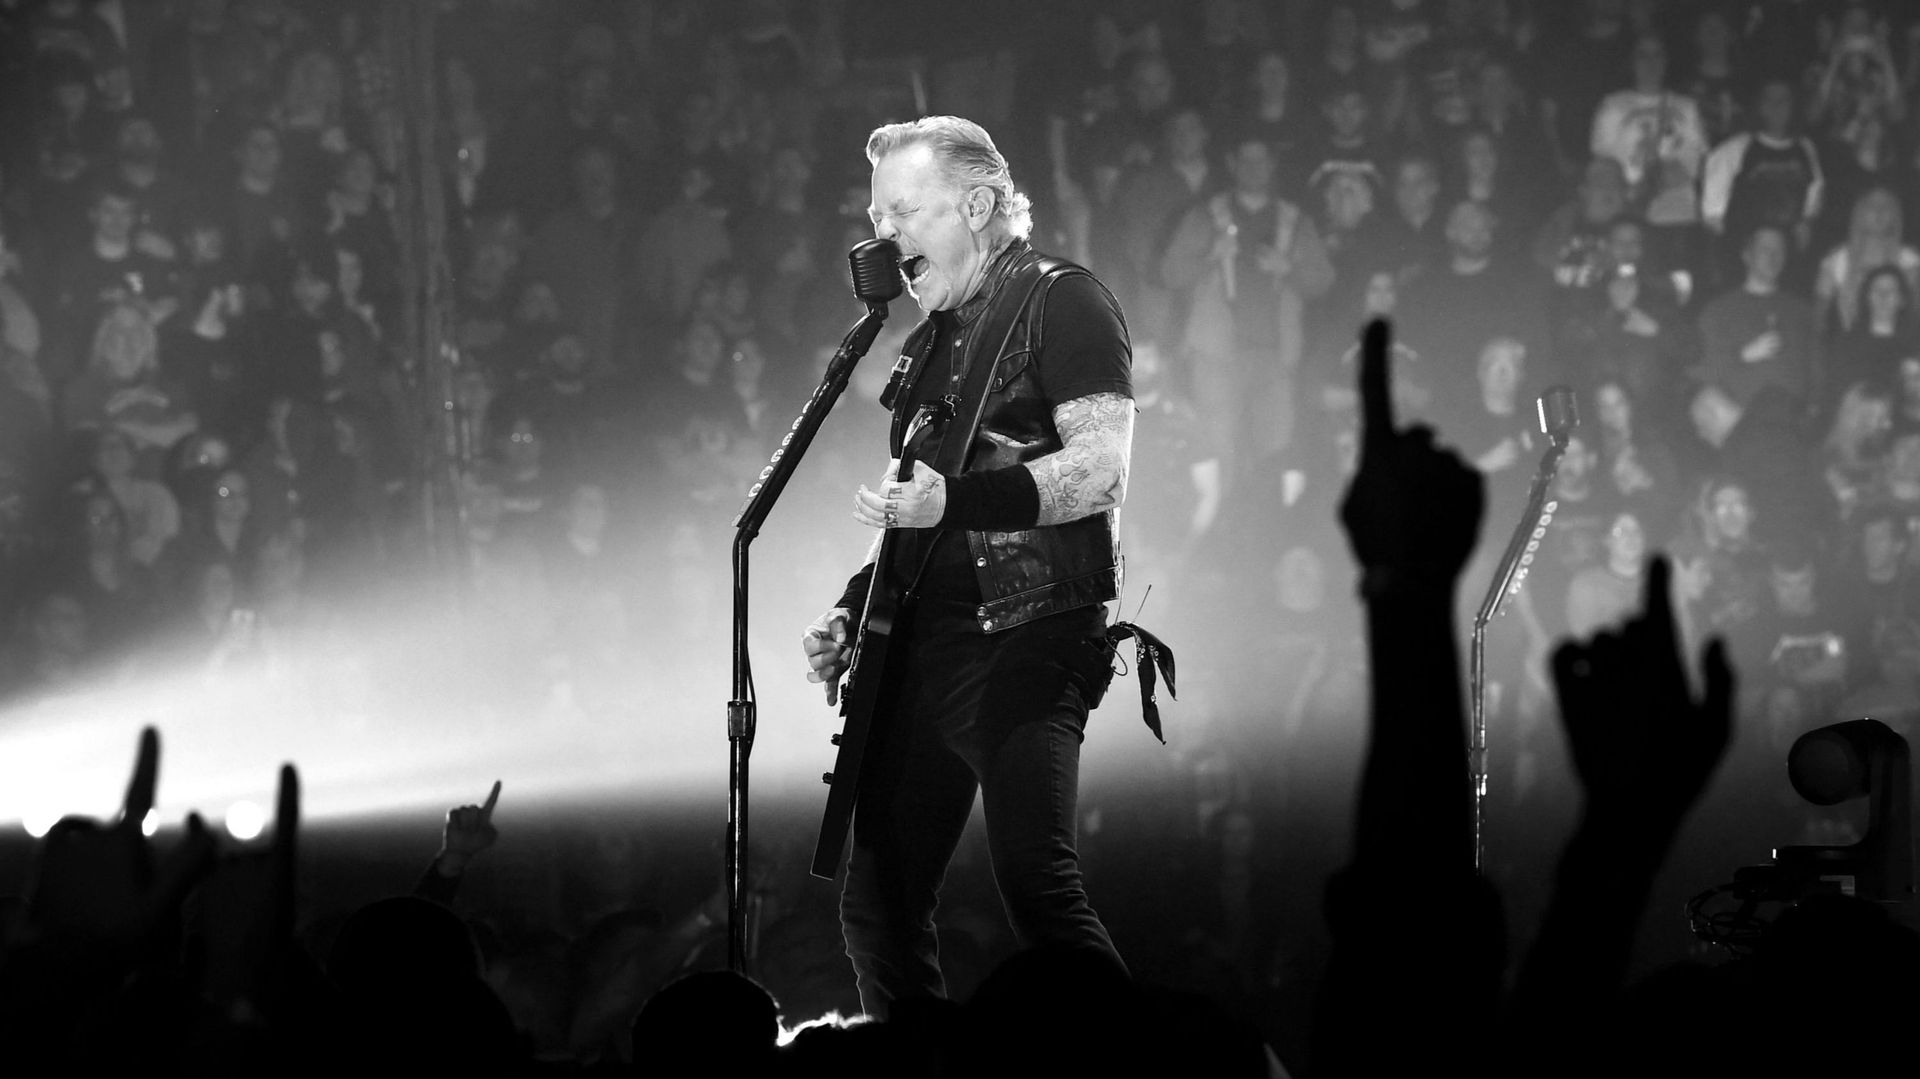 Metallica In Concert - Nashville, TN